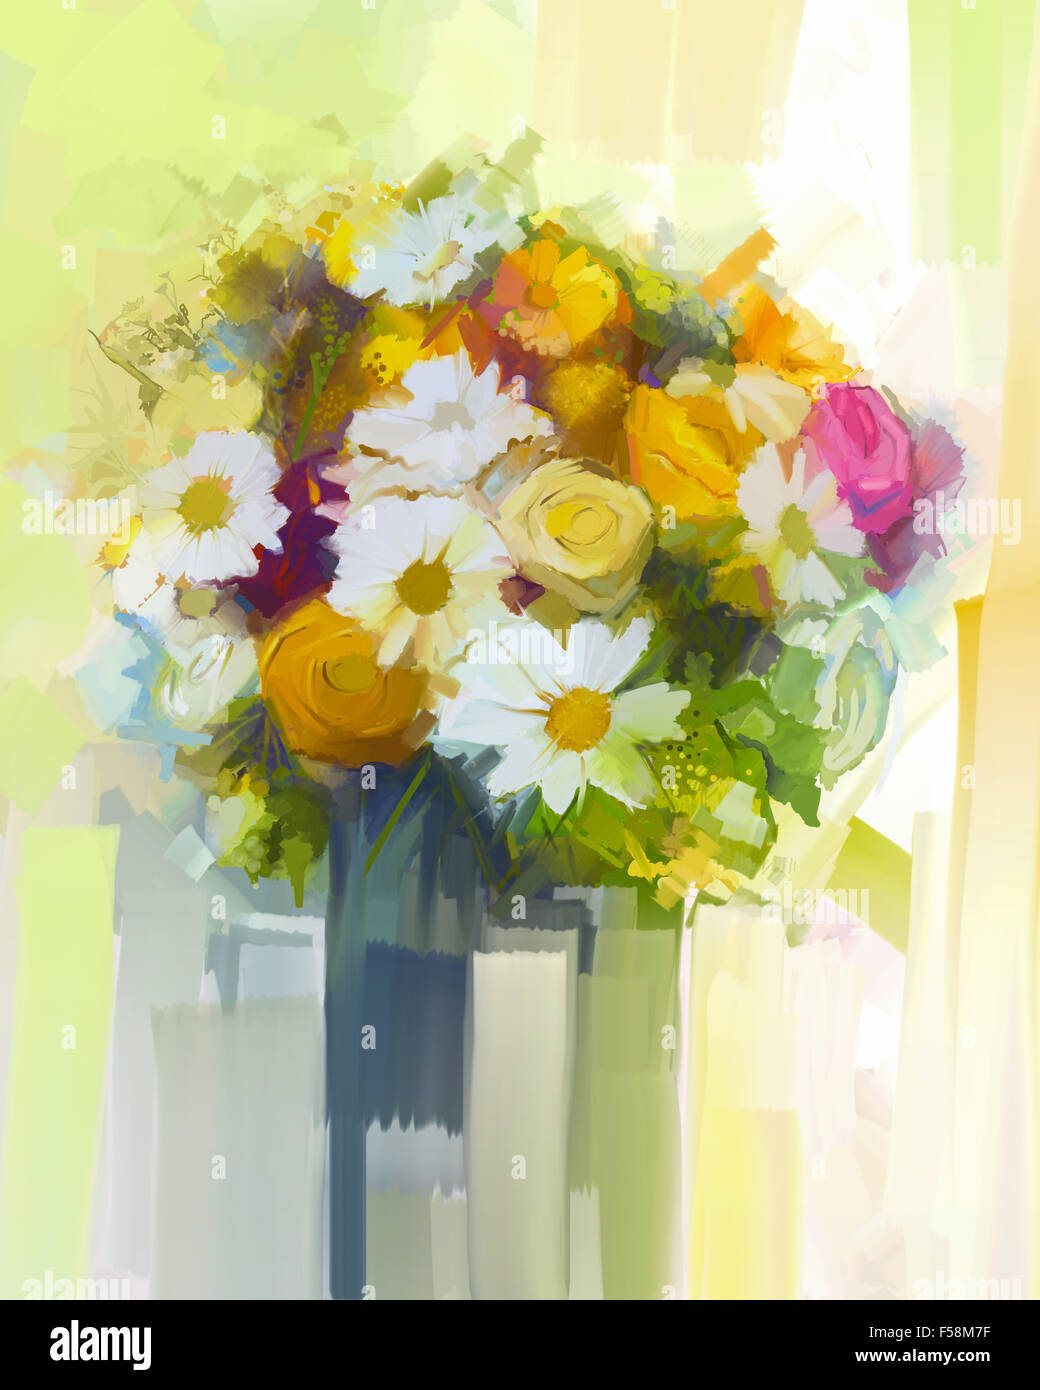 Ancora in vita un bouquet di fiori. Pittura di olio bianco rosso e giallo dei fiori in vaso. Dipinto a mano con motivi floreali in colori delicati e blurre Foto Stock